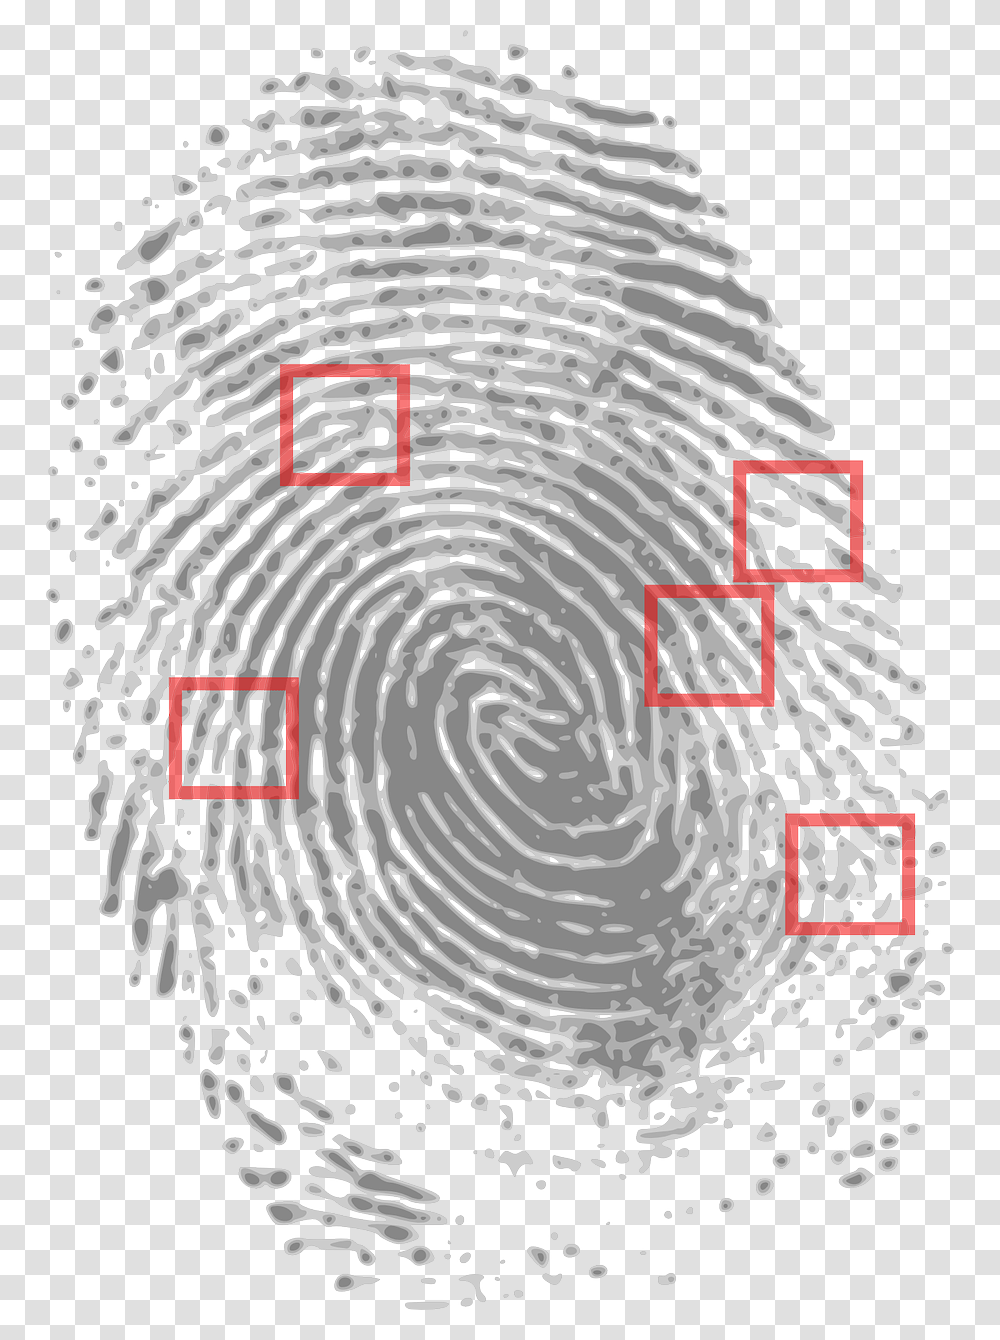 Prints Clipart Finger Print Crime Scene Fingerprint Evidence, Rug, Nature, Spiral Transparent Png